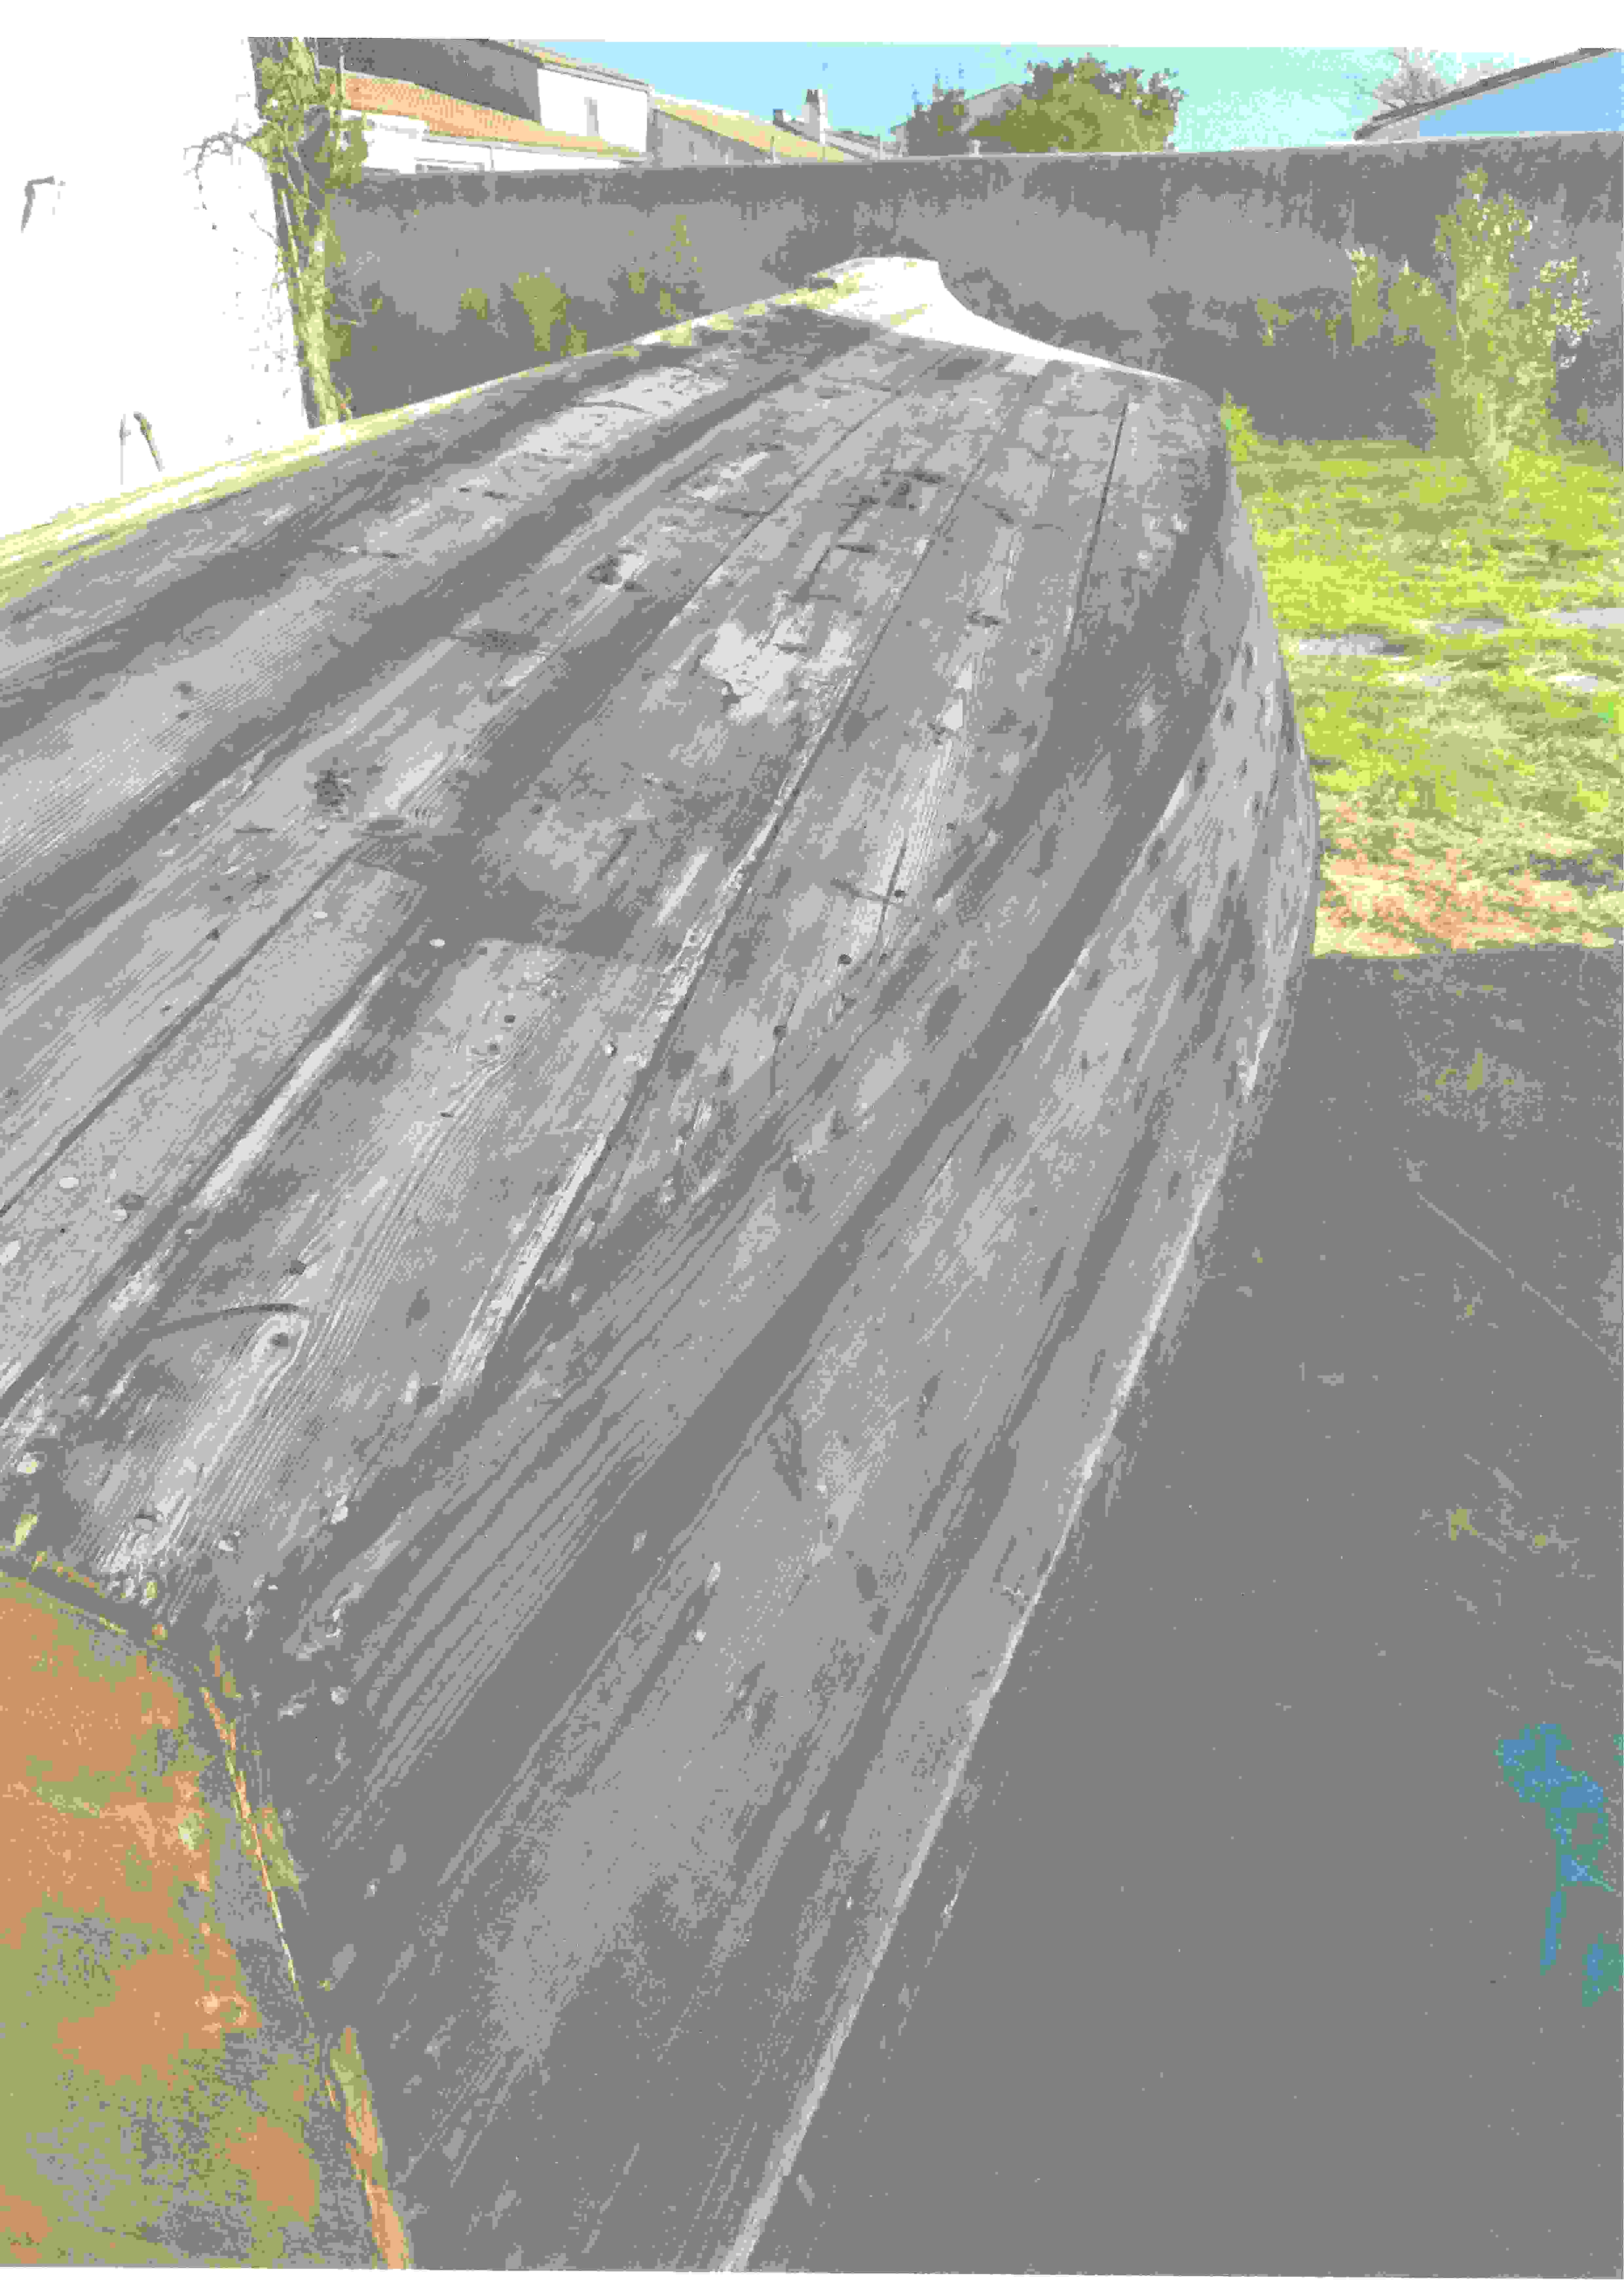 Dériveur traditionnel de l’Île de Ré – Ars en Ré
•	Cazavant en bois construit en 1965 à Ars en Ré.
•	Longueur : 5,35m – maître bau : 1,82m – Tirant d’eau - mini : 0,25m / maxi : 1,15m
•	Coque en bois entièrement décapée (intérieur-extérieur) par aérogommage basse pression et décalfatée. Prévoir calfatage ou stratification de la coque.
•	Tableau arrière refait à neuf.
•	Mât et baume en pin d’Oregon neufs (2019). Stockés dans un local abrité.
•	Gouvernail, barre et dérive rénovés et gréements neufs (2020) : drisses, étais, haubans, accastillage.
•	Voiles (GV et Foc) en état.

•	Moteur Mercury 4CV - 4T révisé en 2020 et stocké en garage.
Prix : 2 200€ sans moteur - 2 600 € avec moteur